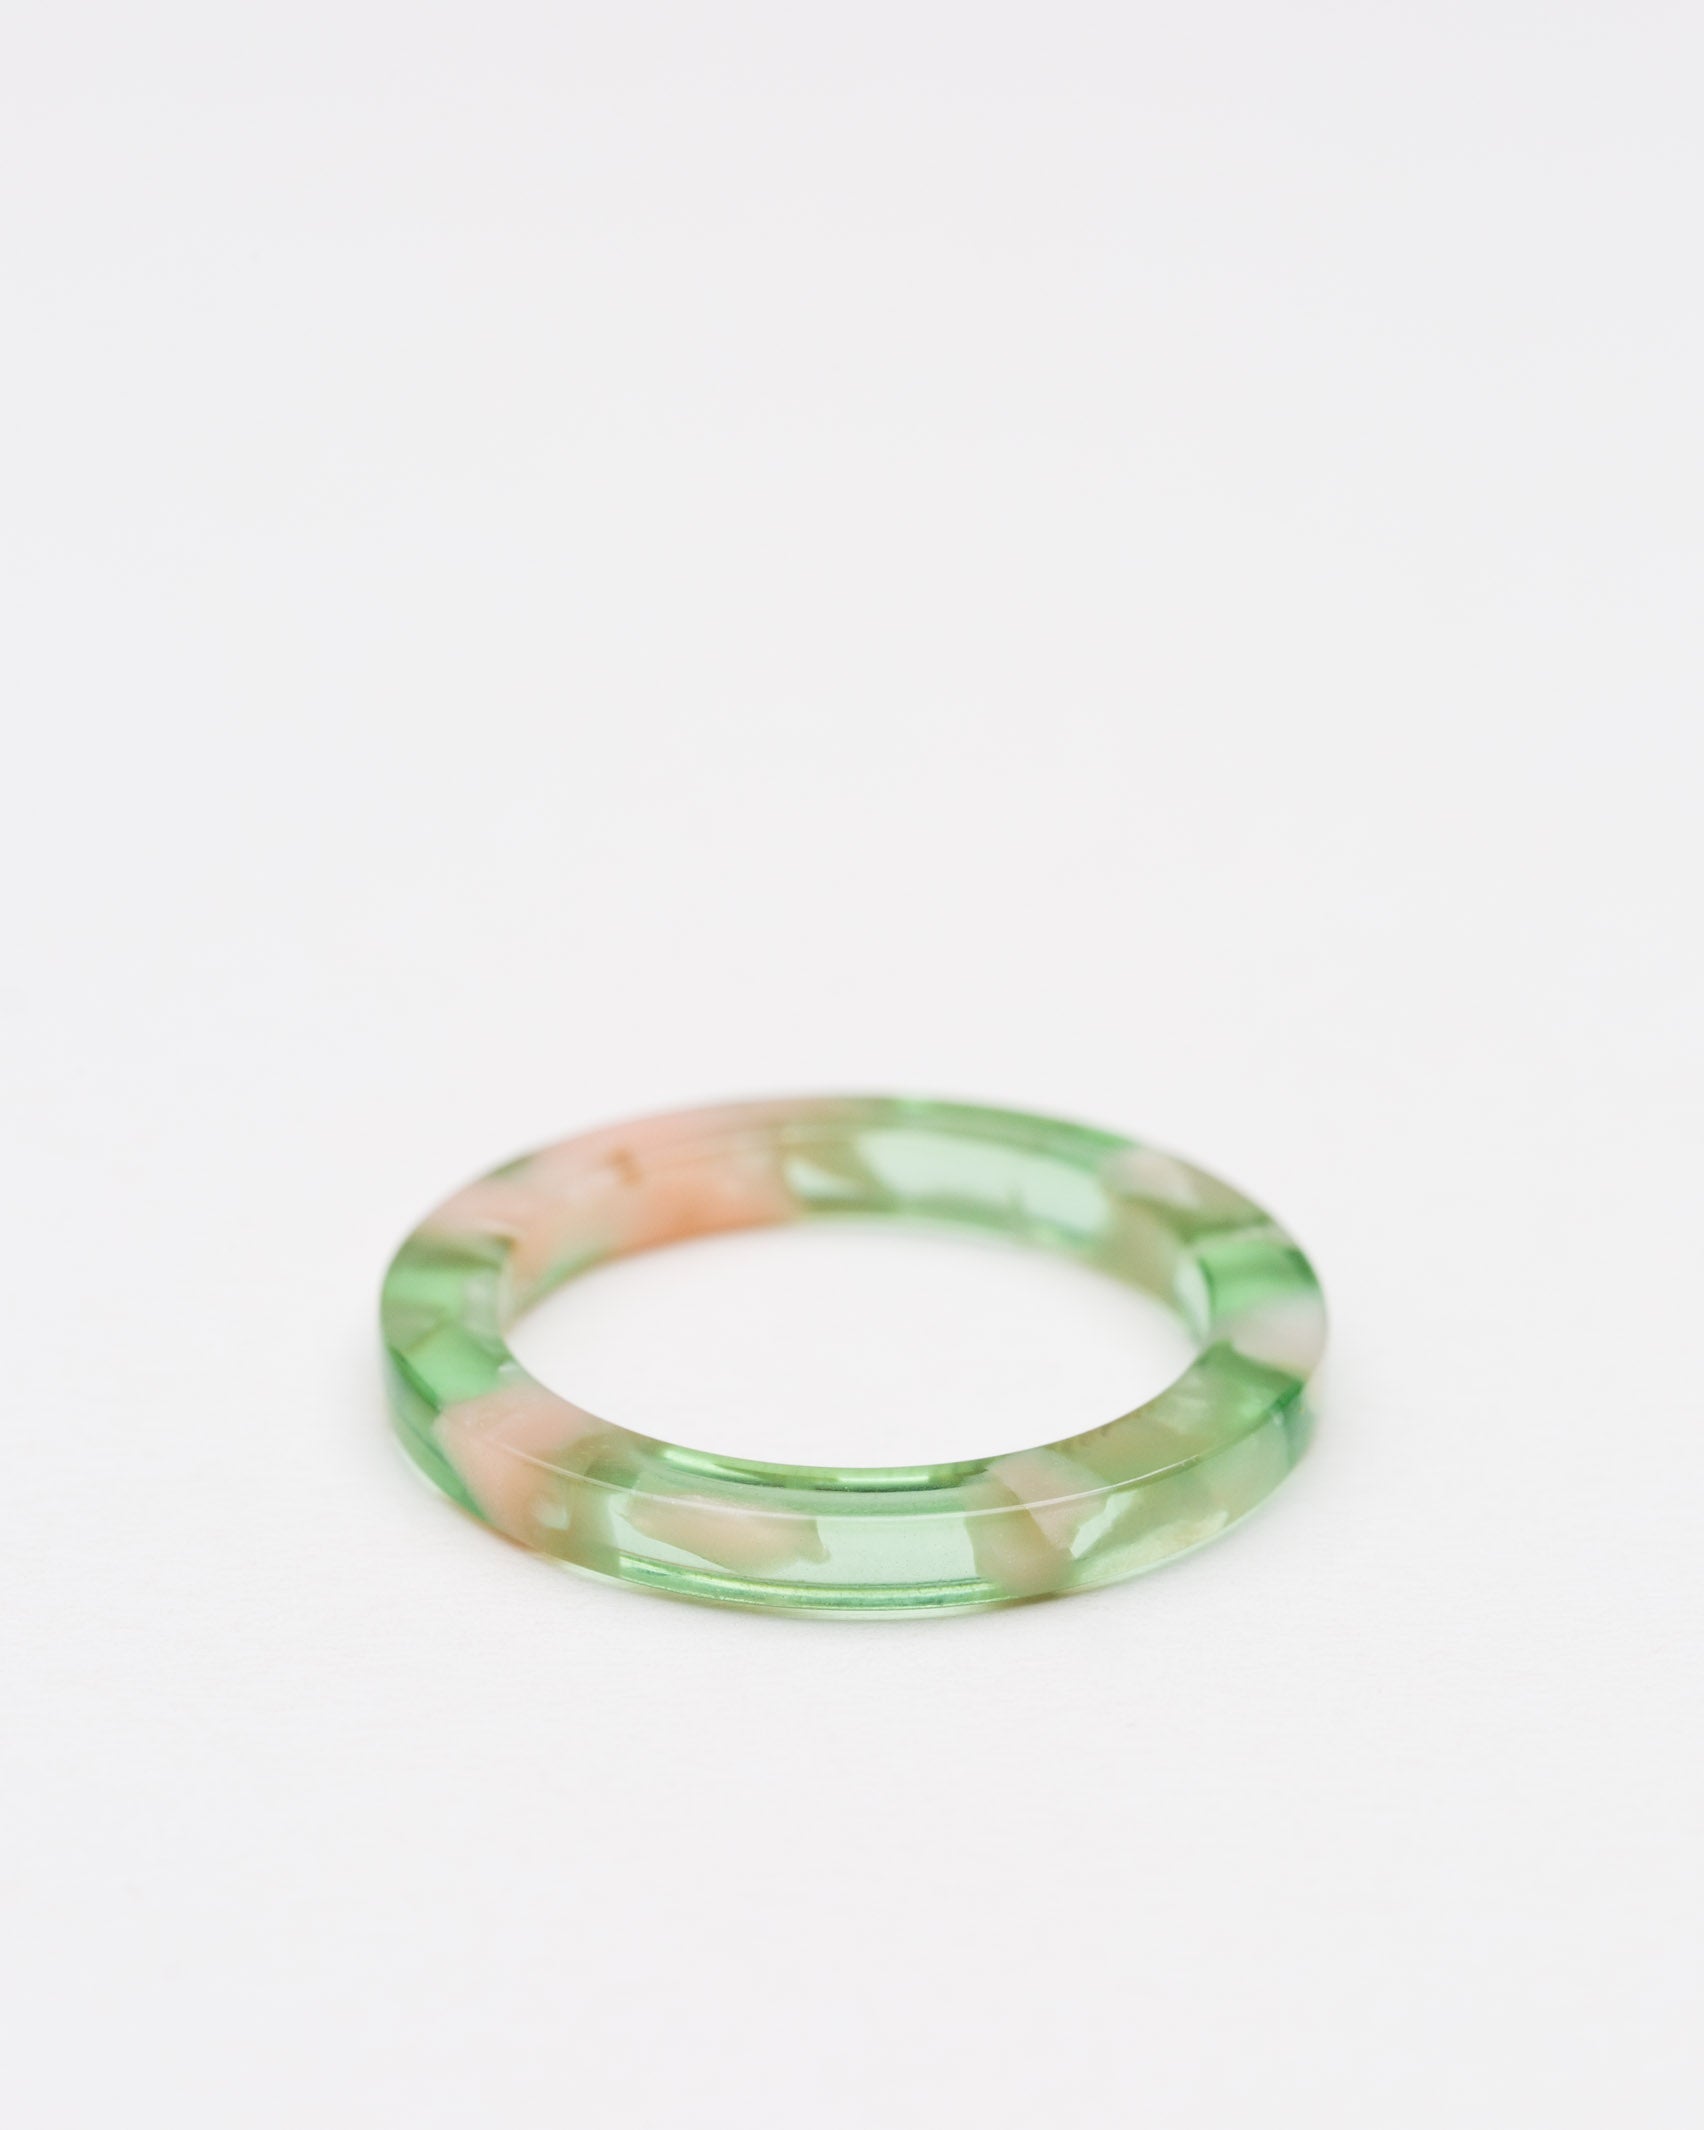  Schmaler Ring in farbiger Horn-Optik - Broke + Schön#farbe_green